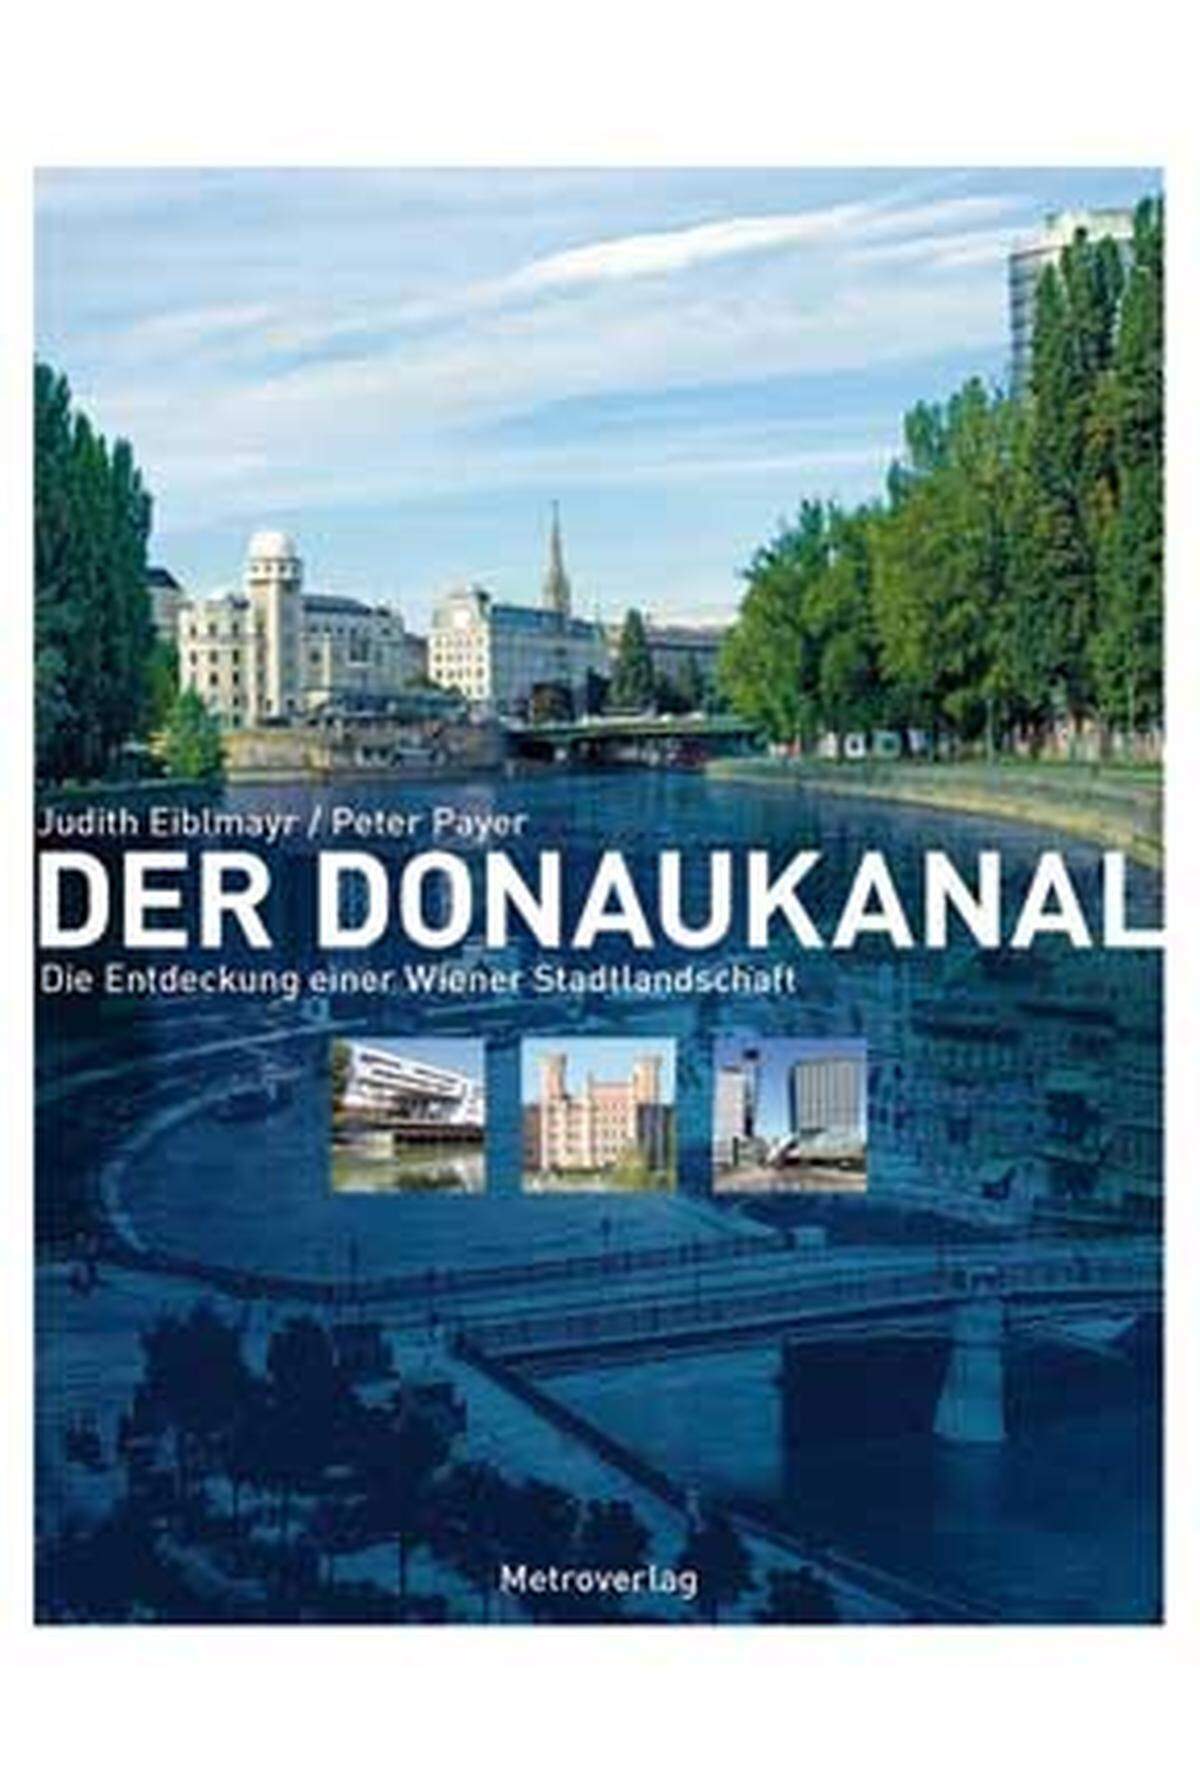 Es ist eine Entdeckungsreise entlang des Donaukanals - „Wien liegt am Donaukanal und nicht an der Donau“, stellte der Schriftsteller Friedrich Torberg Anfang der 1980er-Jahre unmissverständlich klar. Wie gebannt hatte man jahrhundertelang auf den großen europäischen Strom geblickt und dabei geflissentlich seinen stadtnächsten Abzweigung, die „kleine Donau“, übersehen. www.metroverlag.at